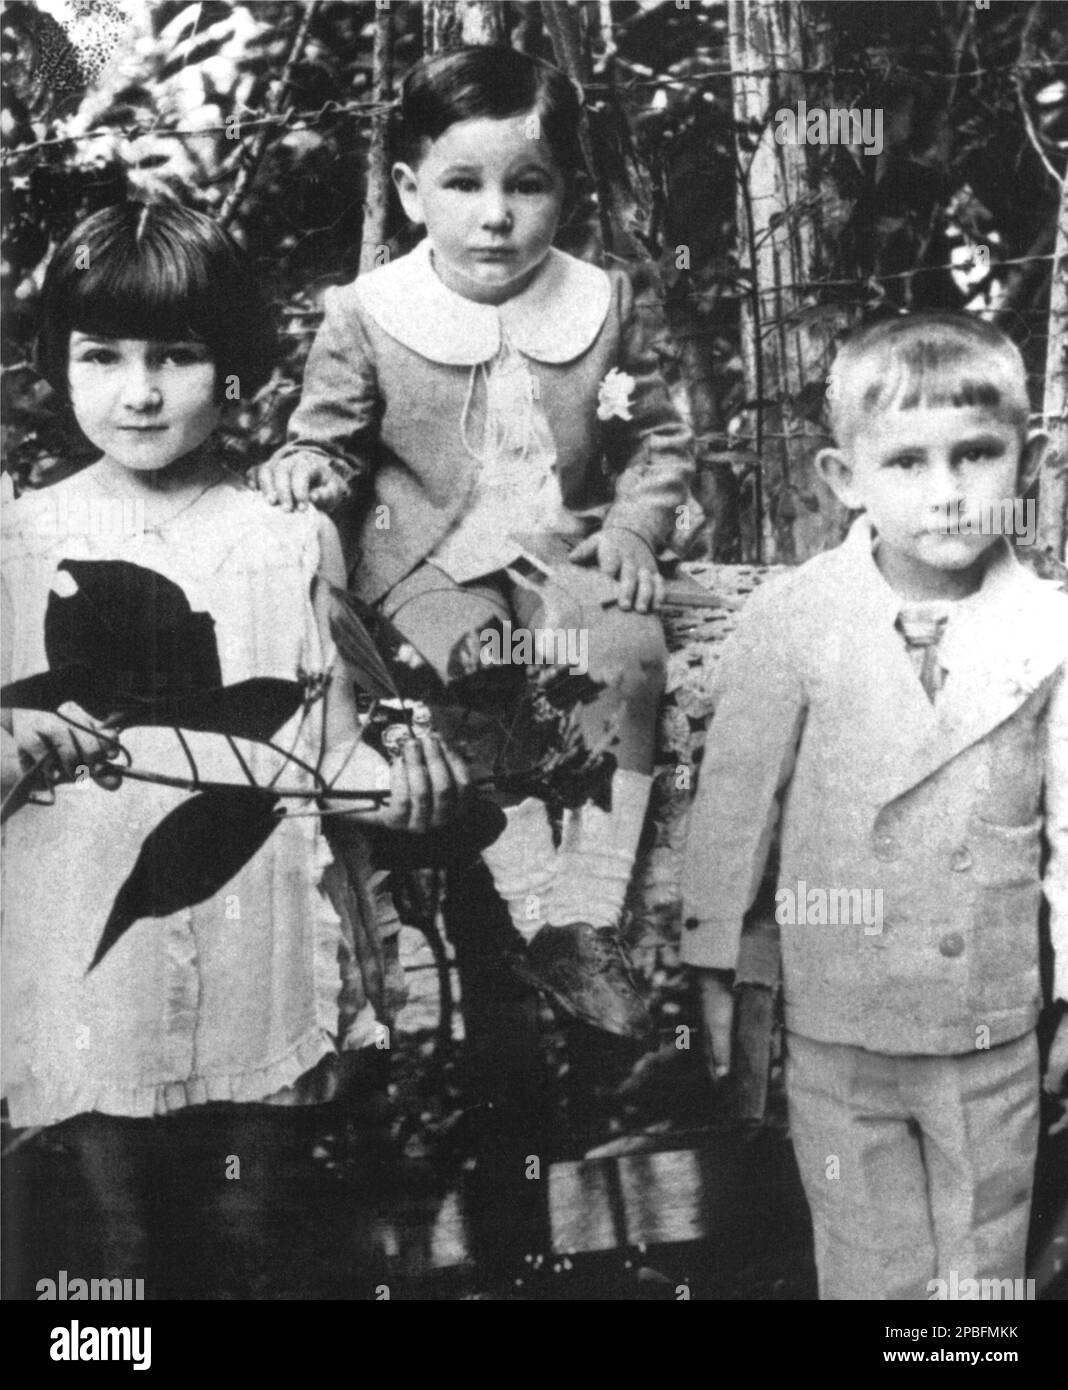 1929 , KUBA : der kubanische Politiker-Rivolutionär FIDEL CASTRO Ruz ( geboren am 13. August 1926 ), als er ein Kind im Alter von 3 Jahren war. Auf diesem Foto mit seiner Schwester ANGELITA ( im Alter von 6 Jahren ) und Bruder RAMON ( im Alter von 4 Jahren ) - POLITICA - POLITISCH - SOZIALISTISCH - SOCIALISMO - SOZIALISMUS - COMUNISTA - COMUNISMO - KOMMUNIST - KOMMUNISMUS - foto storiche - foto storica - arringa - comizio - RIVOLUZIONE - REVOLUTION - RIVOLUZIONARIO - Persönlichkeit, als junge Prominente Prominente waren - Persönlichkeiten Kinder - Prominente Personalita' da giovane giovani bambino Bambini --- Archivio GBB Stockfoto